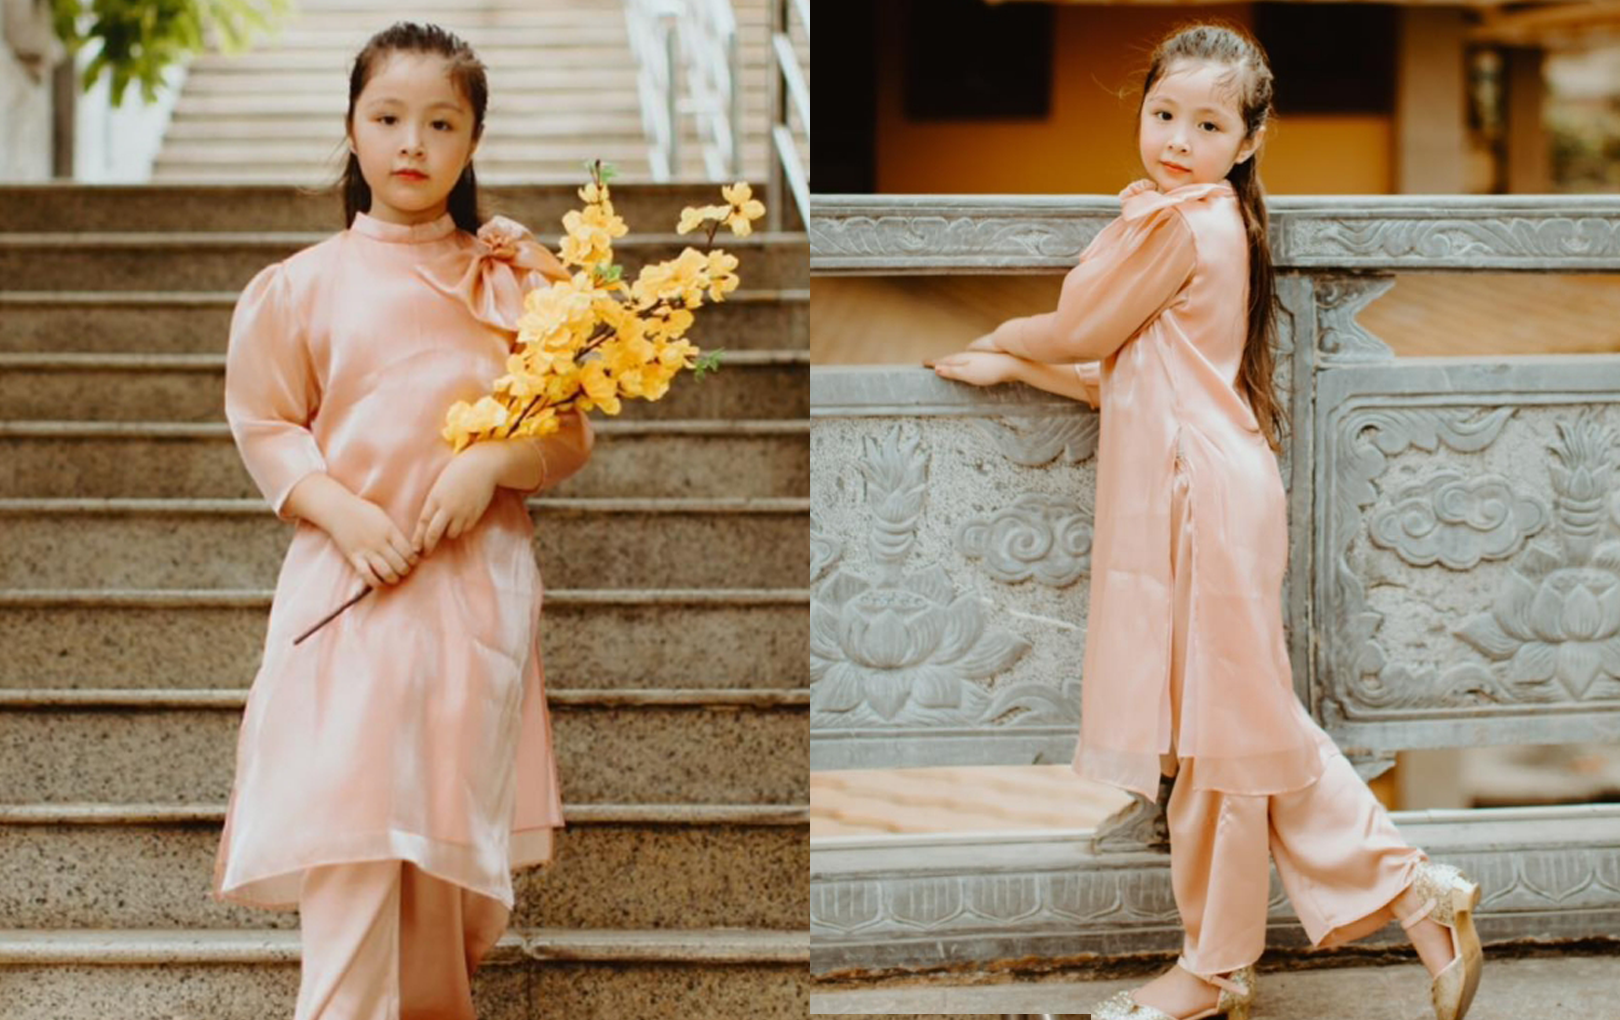 Con gái Elly Trần 8 tuổi: vẫn xinh xắn xứng danh “em bé đẹp nhất showbiz” một thời - Ảnh 5